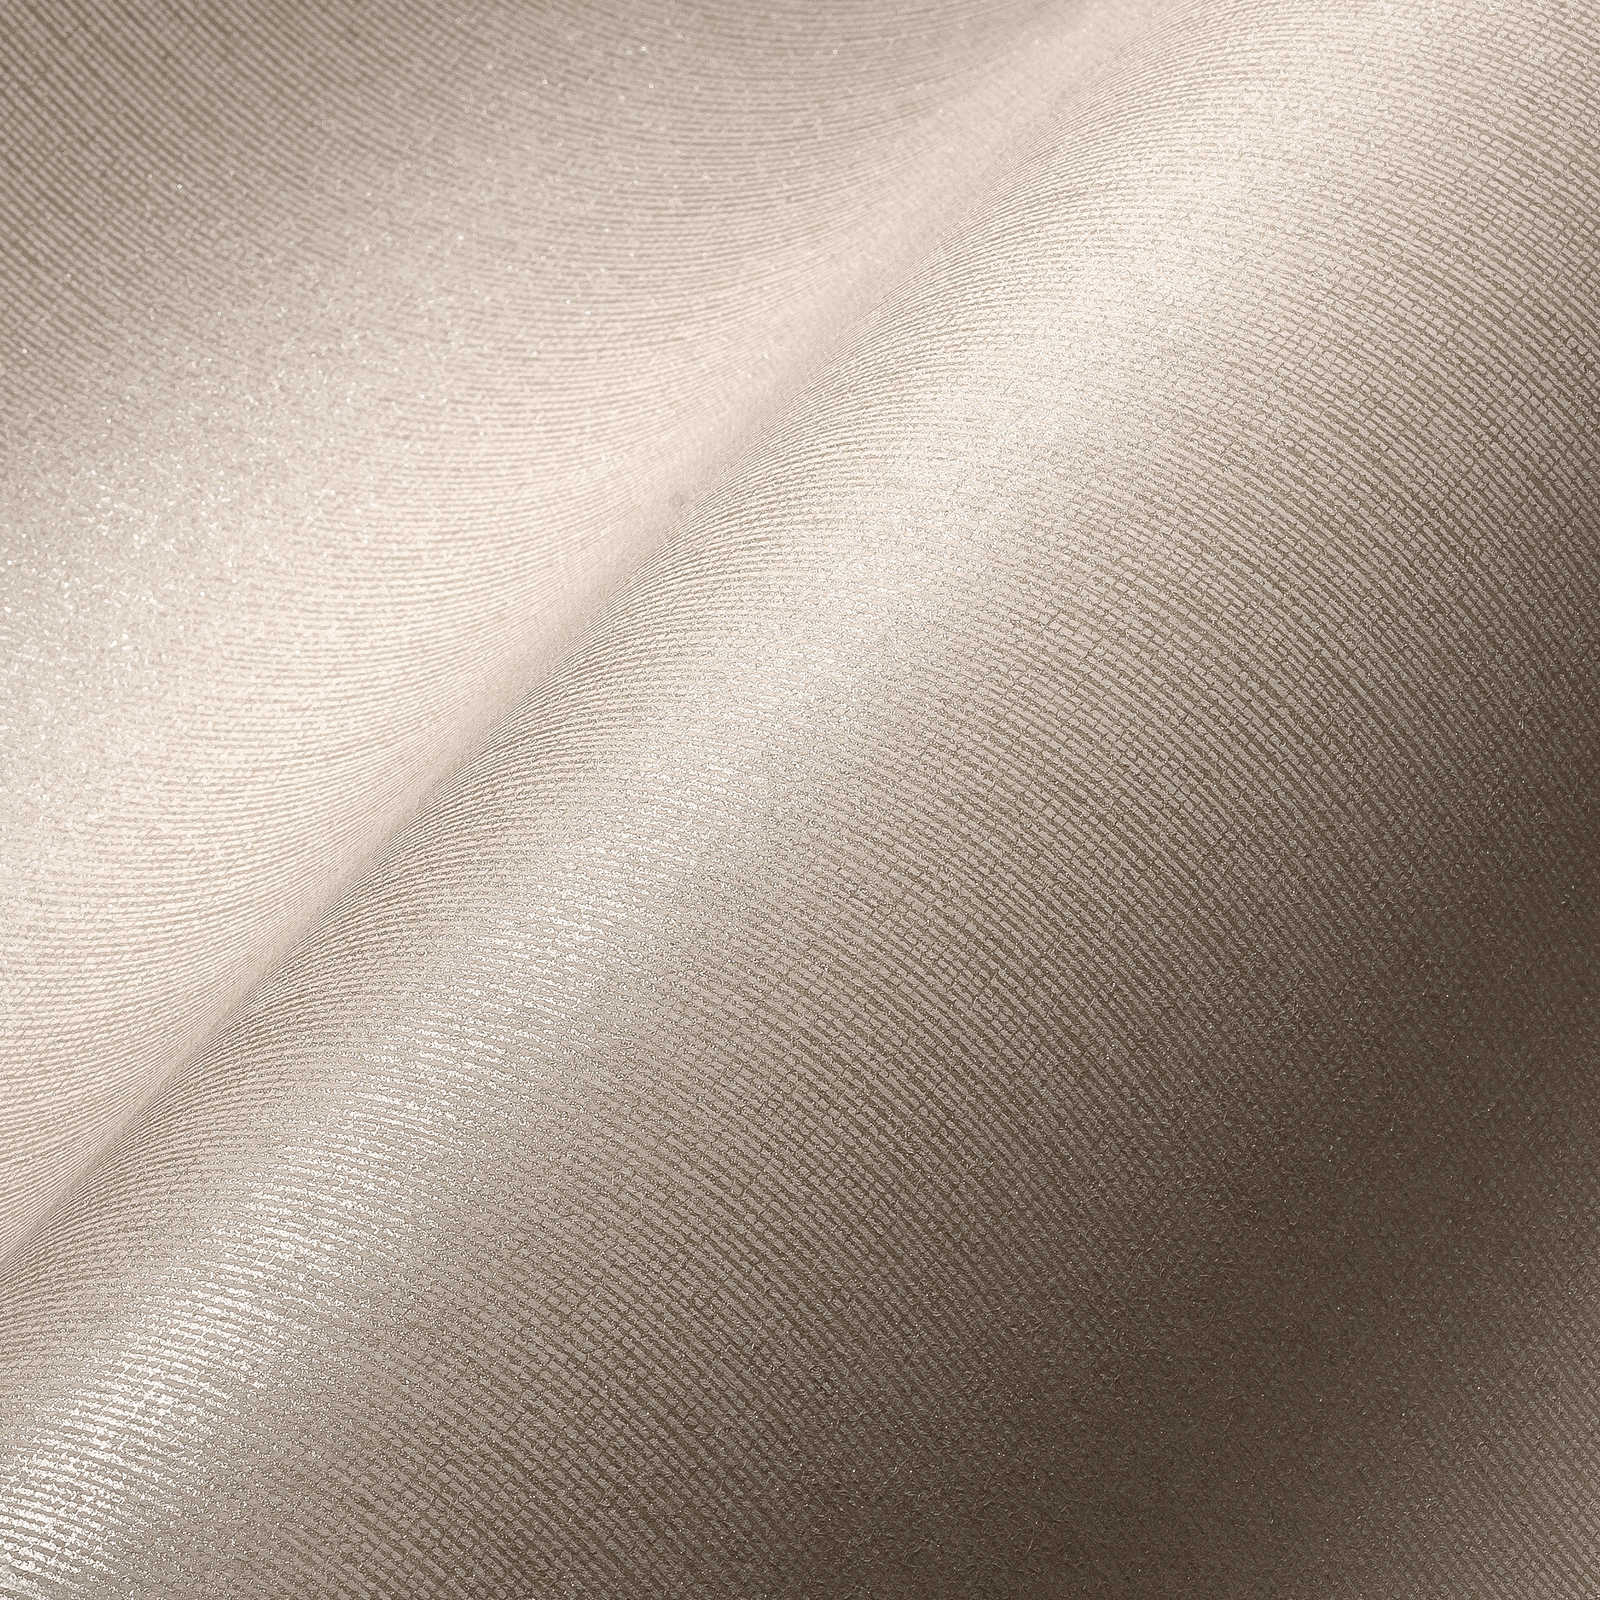             Papel pintado no tejido beige claro con efecto brillante y aspecto textil - beige
        